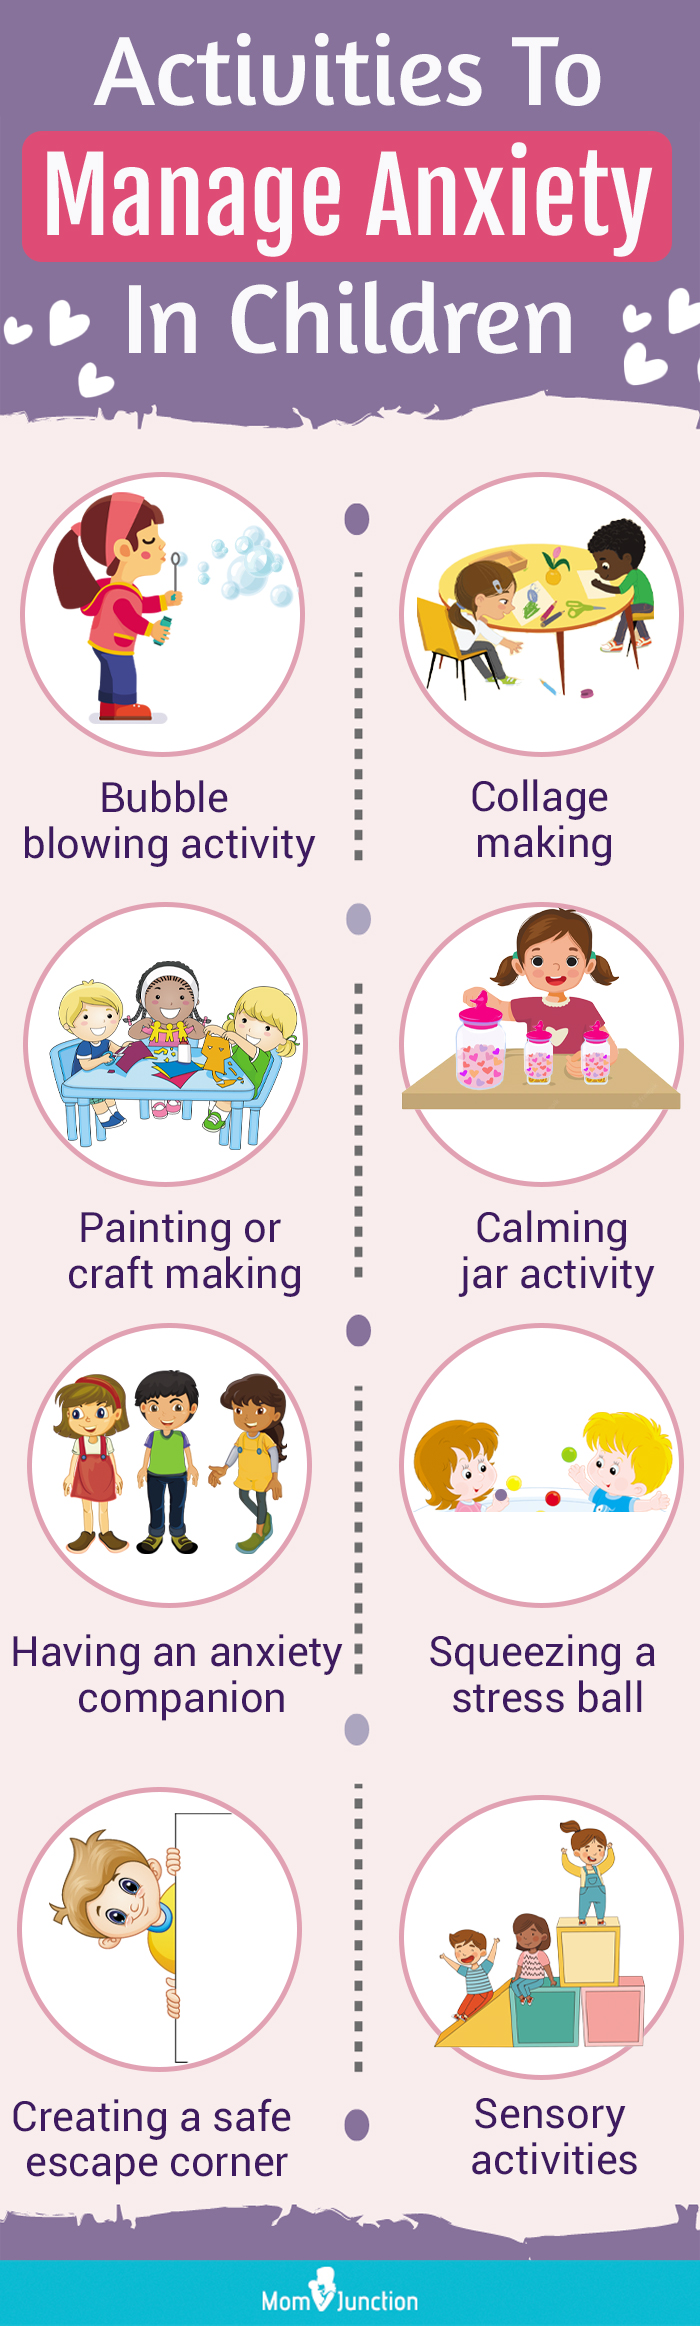 管理儿童焦虑的活动(信息图)